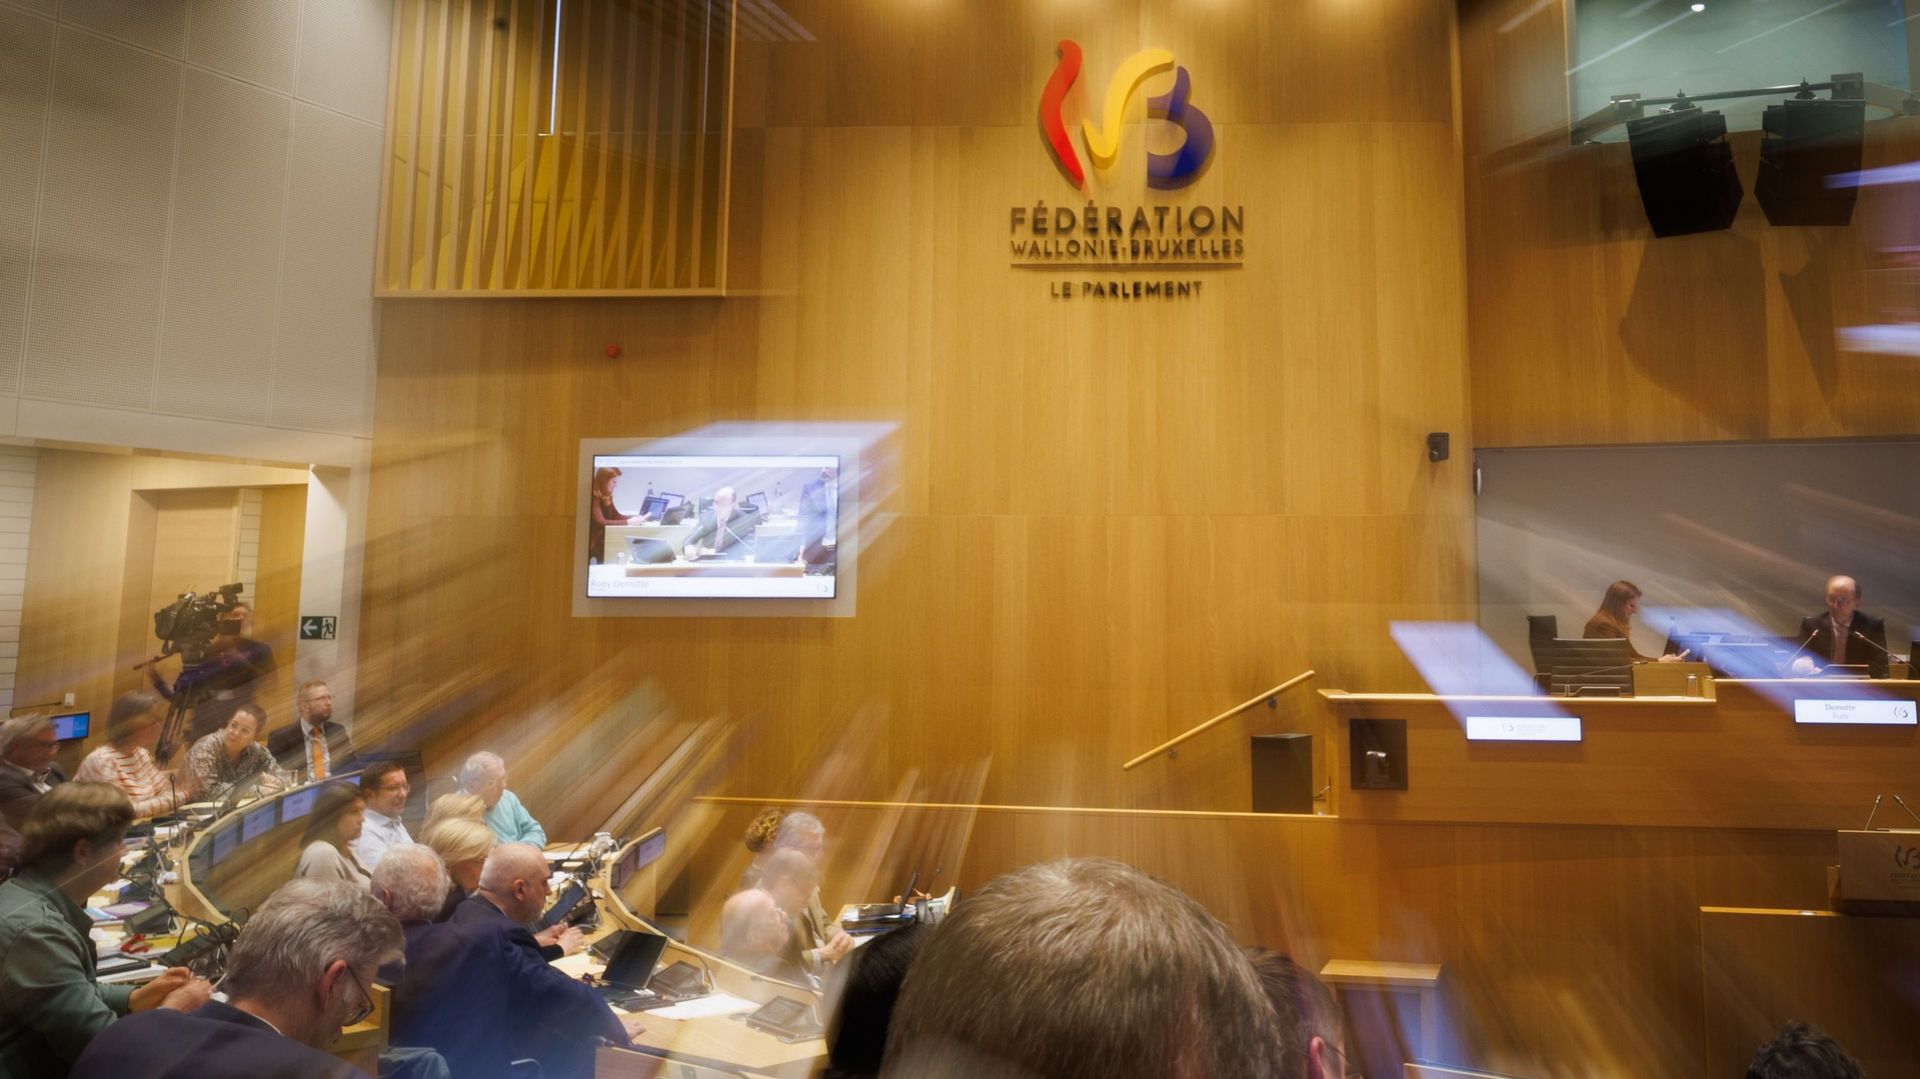 Le parlement de la Fédération Wallonie-Bruxelles lors de la session plénière avant les élections de juin 2024, jeudi 25 avril 2024.

